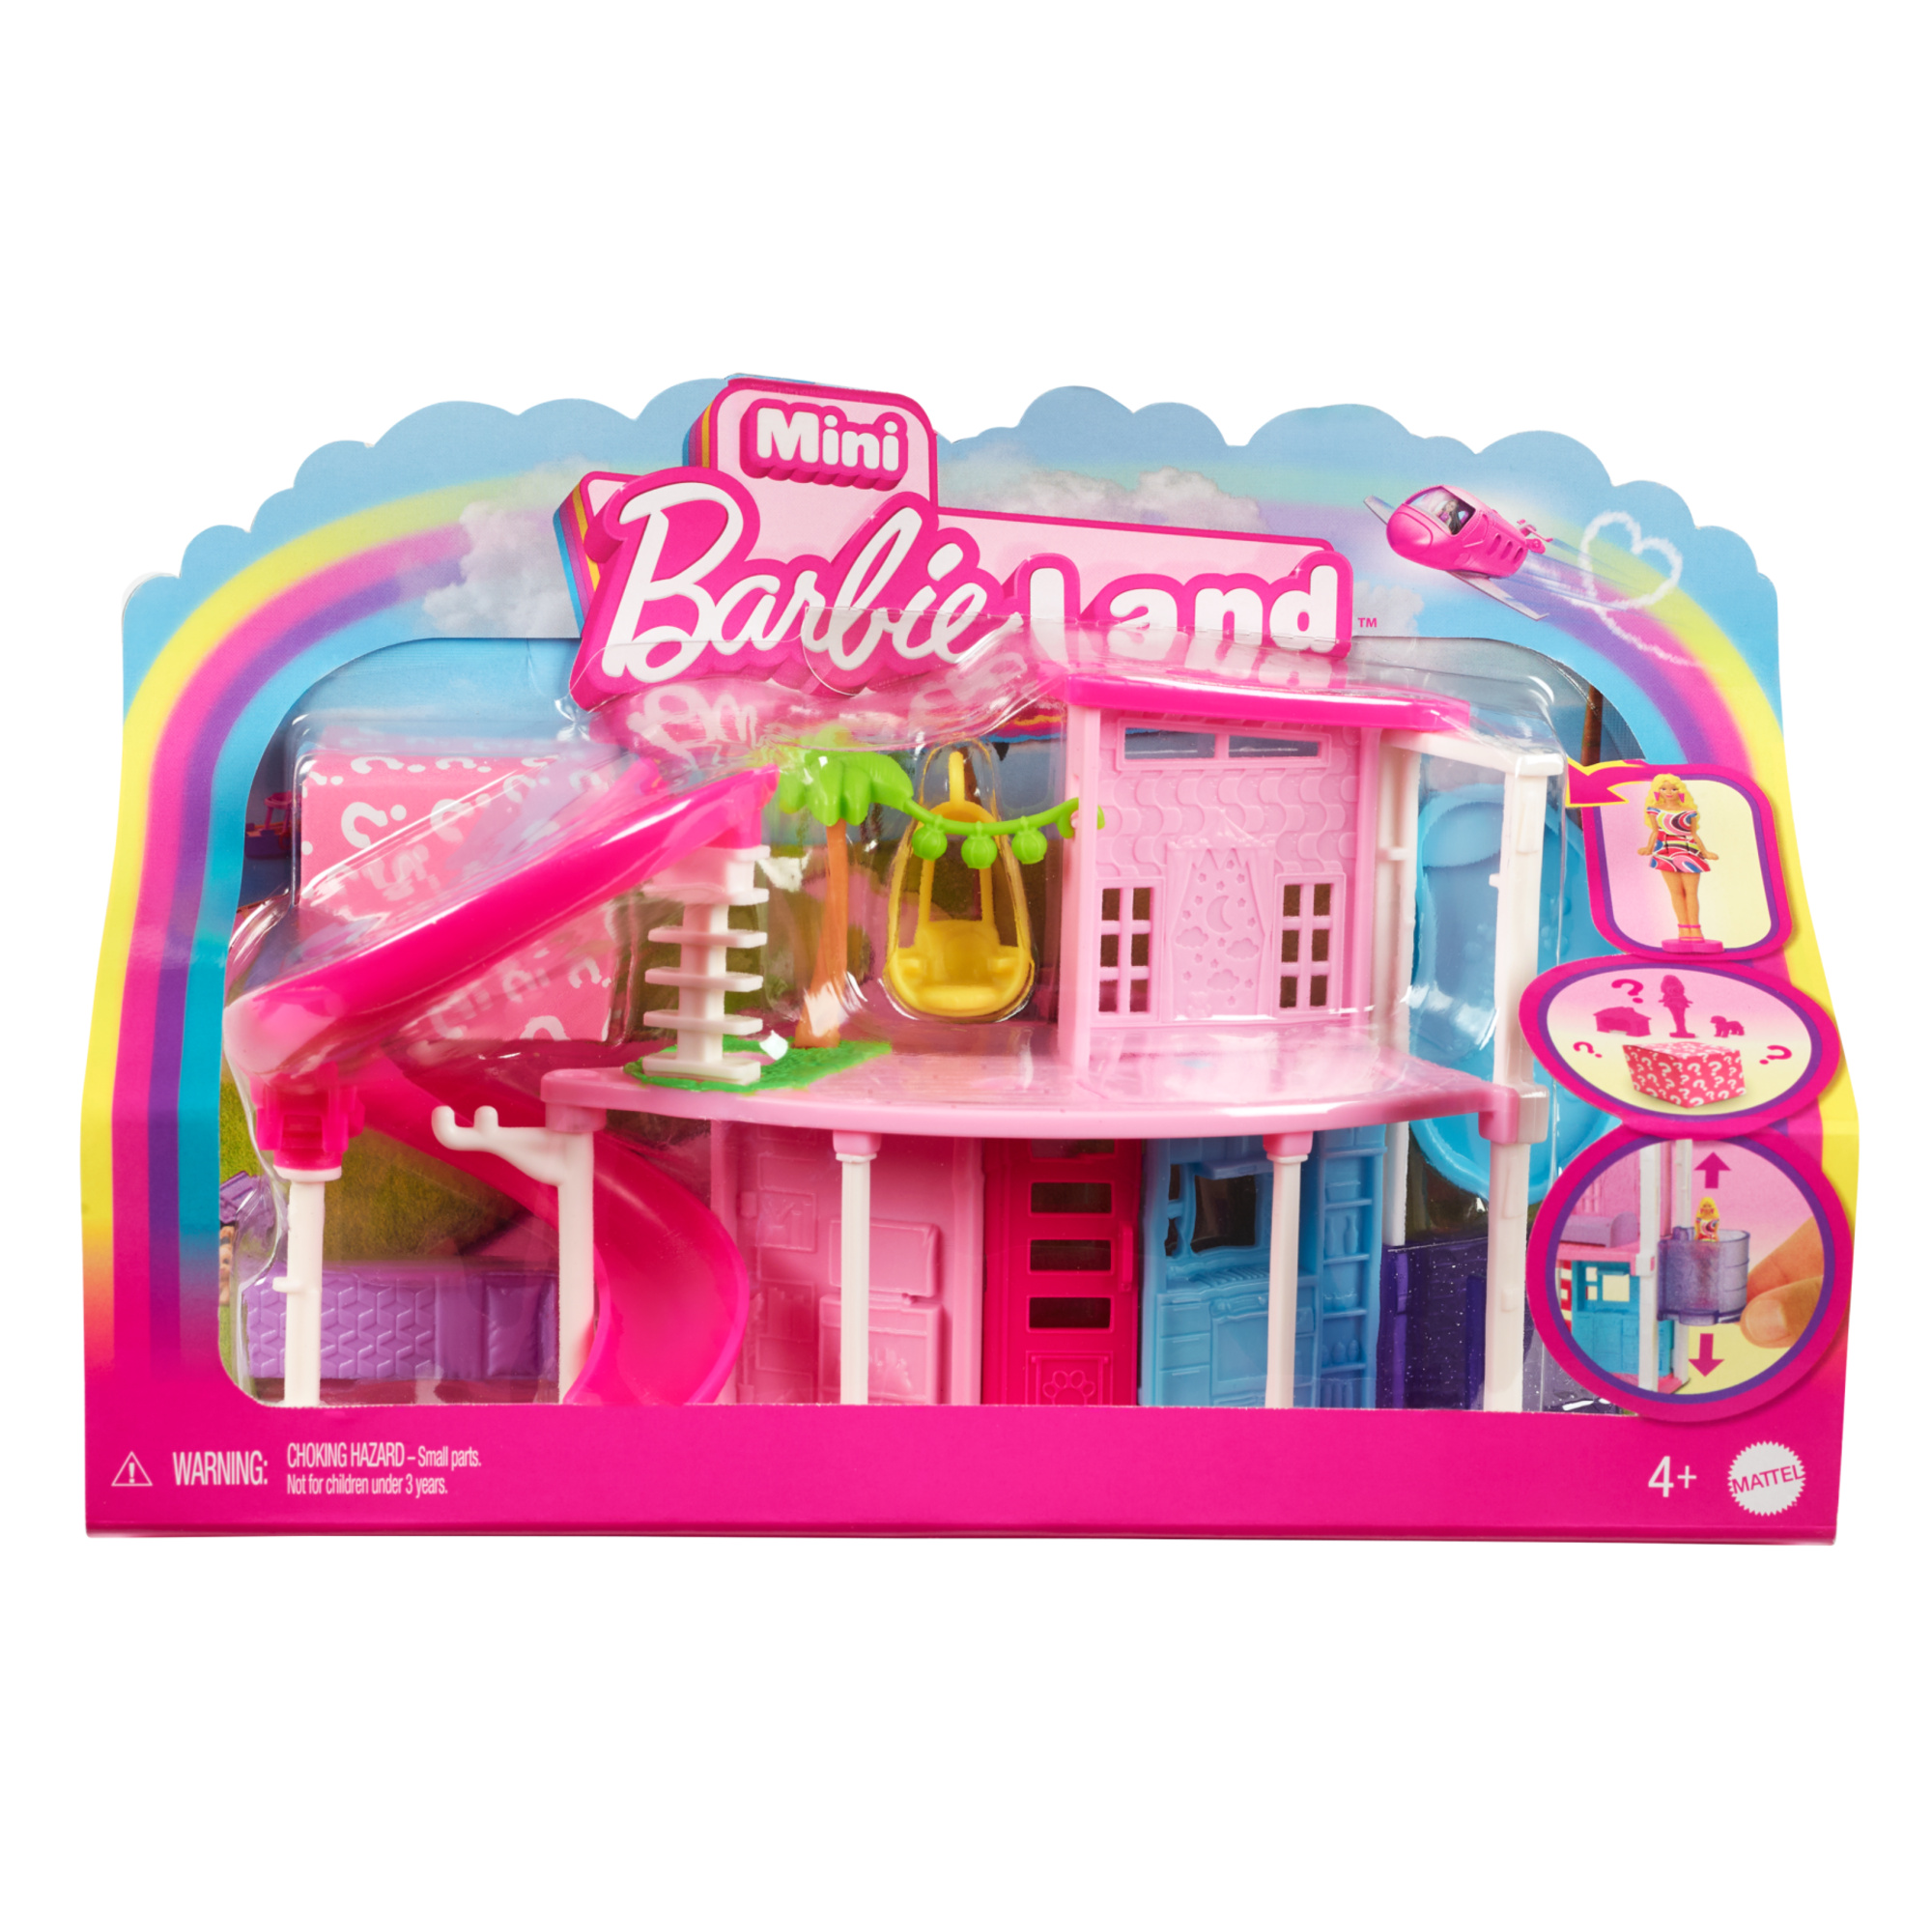 Mini barbieland - casa dei sogni 1 - playset con bambola barbie a sorpresa, mobili e accessori inclusi - Barbie